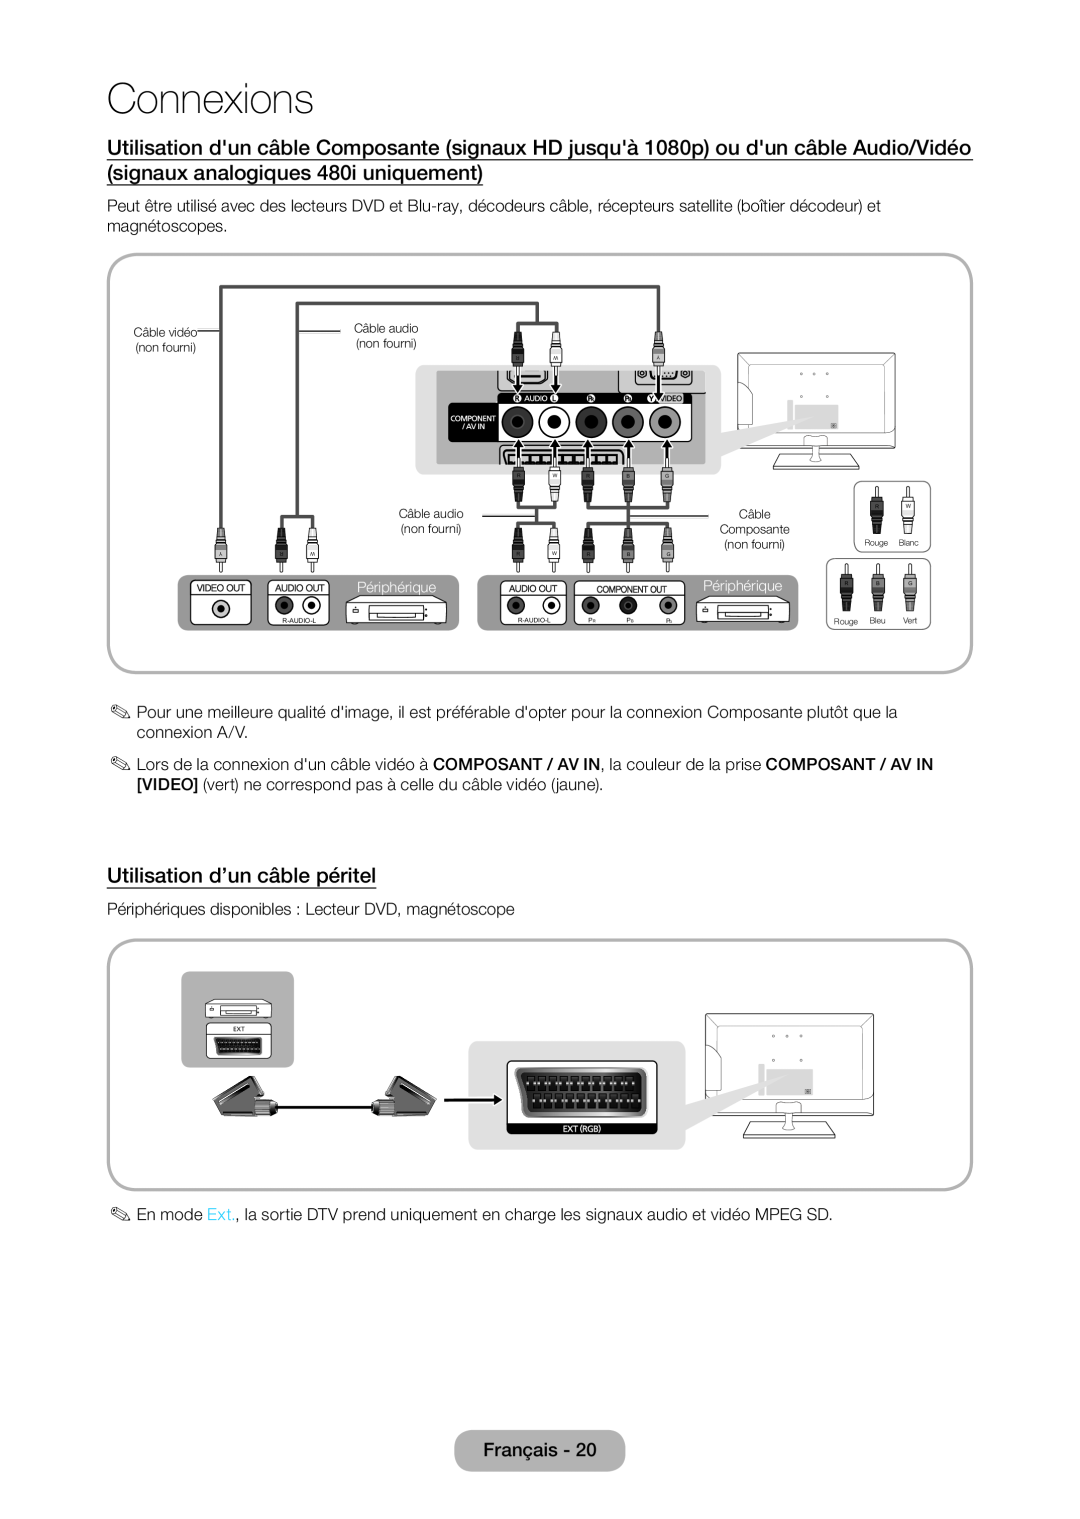 Samsung LT24C350EW/EN, LT23C350EW/EN, LT22C350EW/EN, LT24C370EW/EN, LT27C350EW/EN Utilisation d’un câble péritel, Connexions 